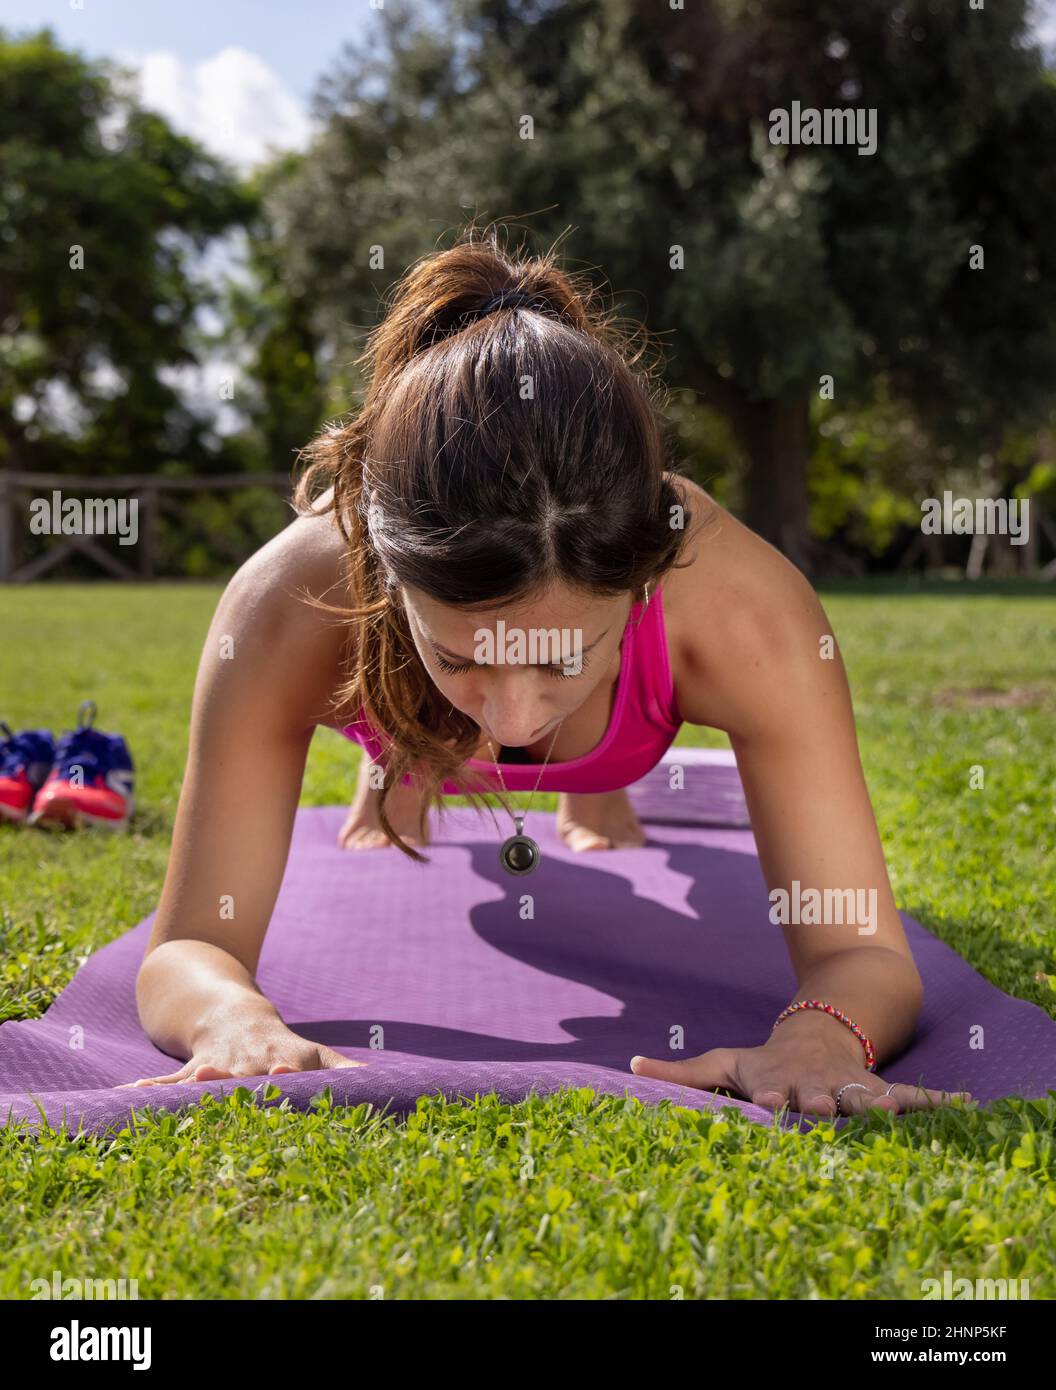 Joven mujer concentrada en posición de plancha en una estera en un parque en un día de verano Foto de stock